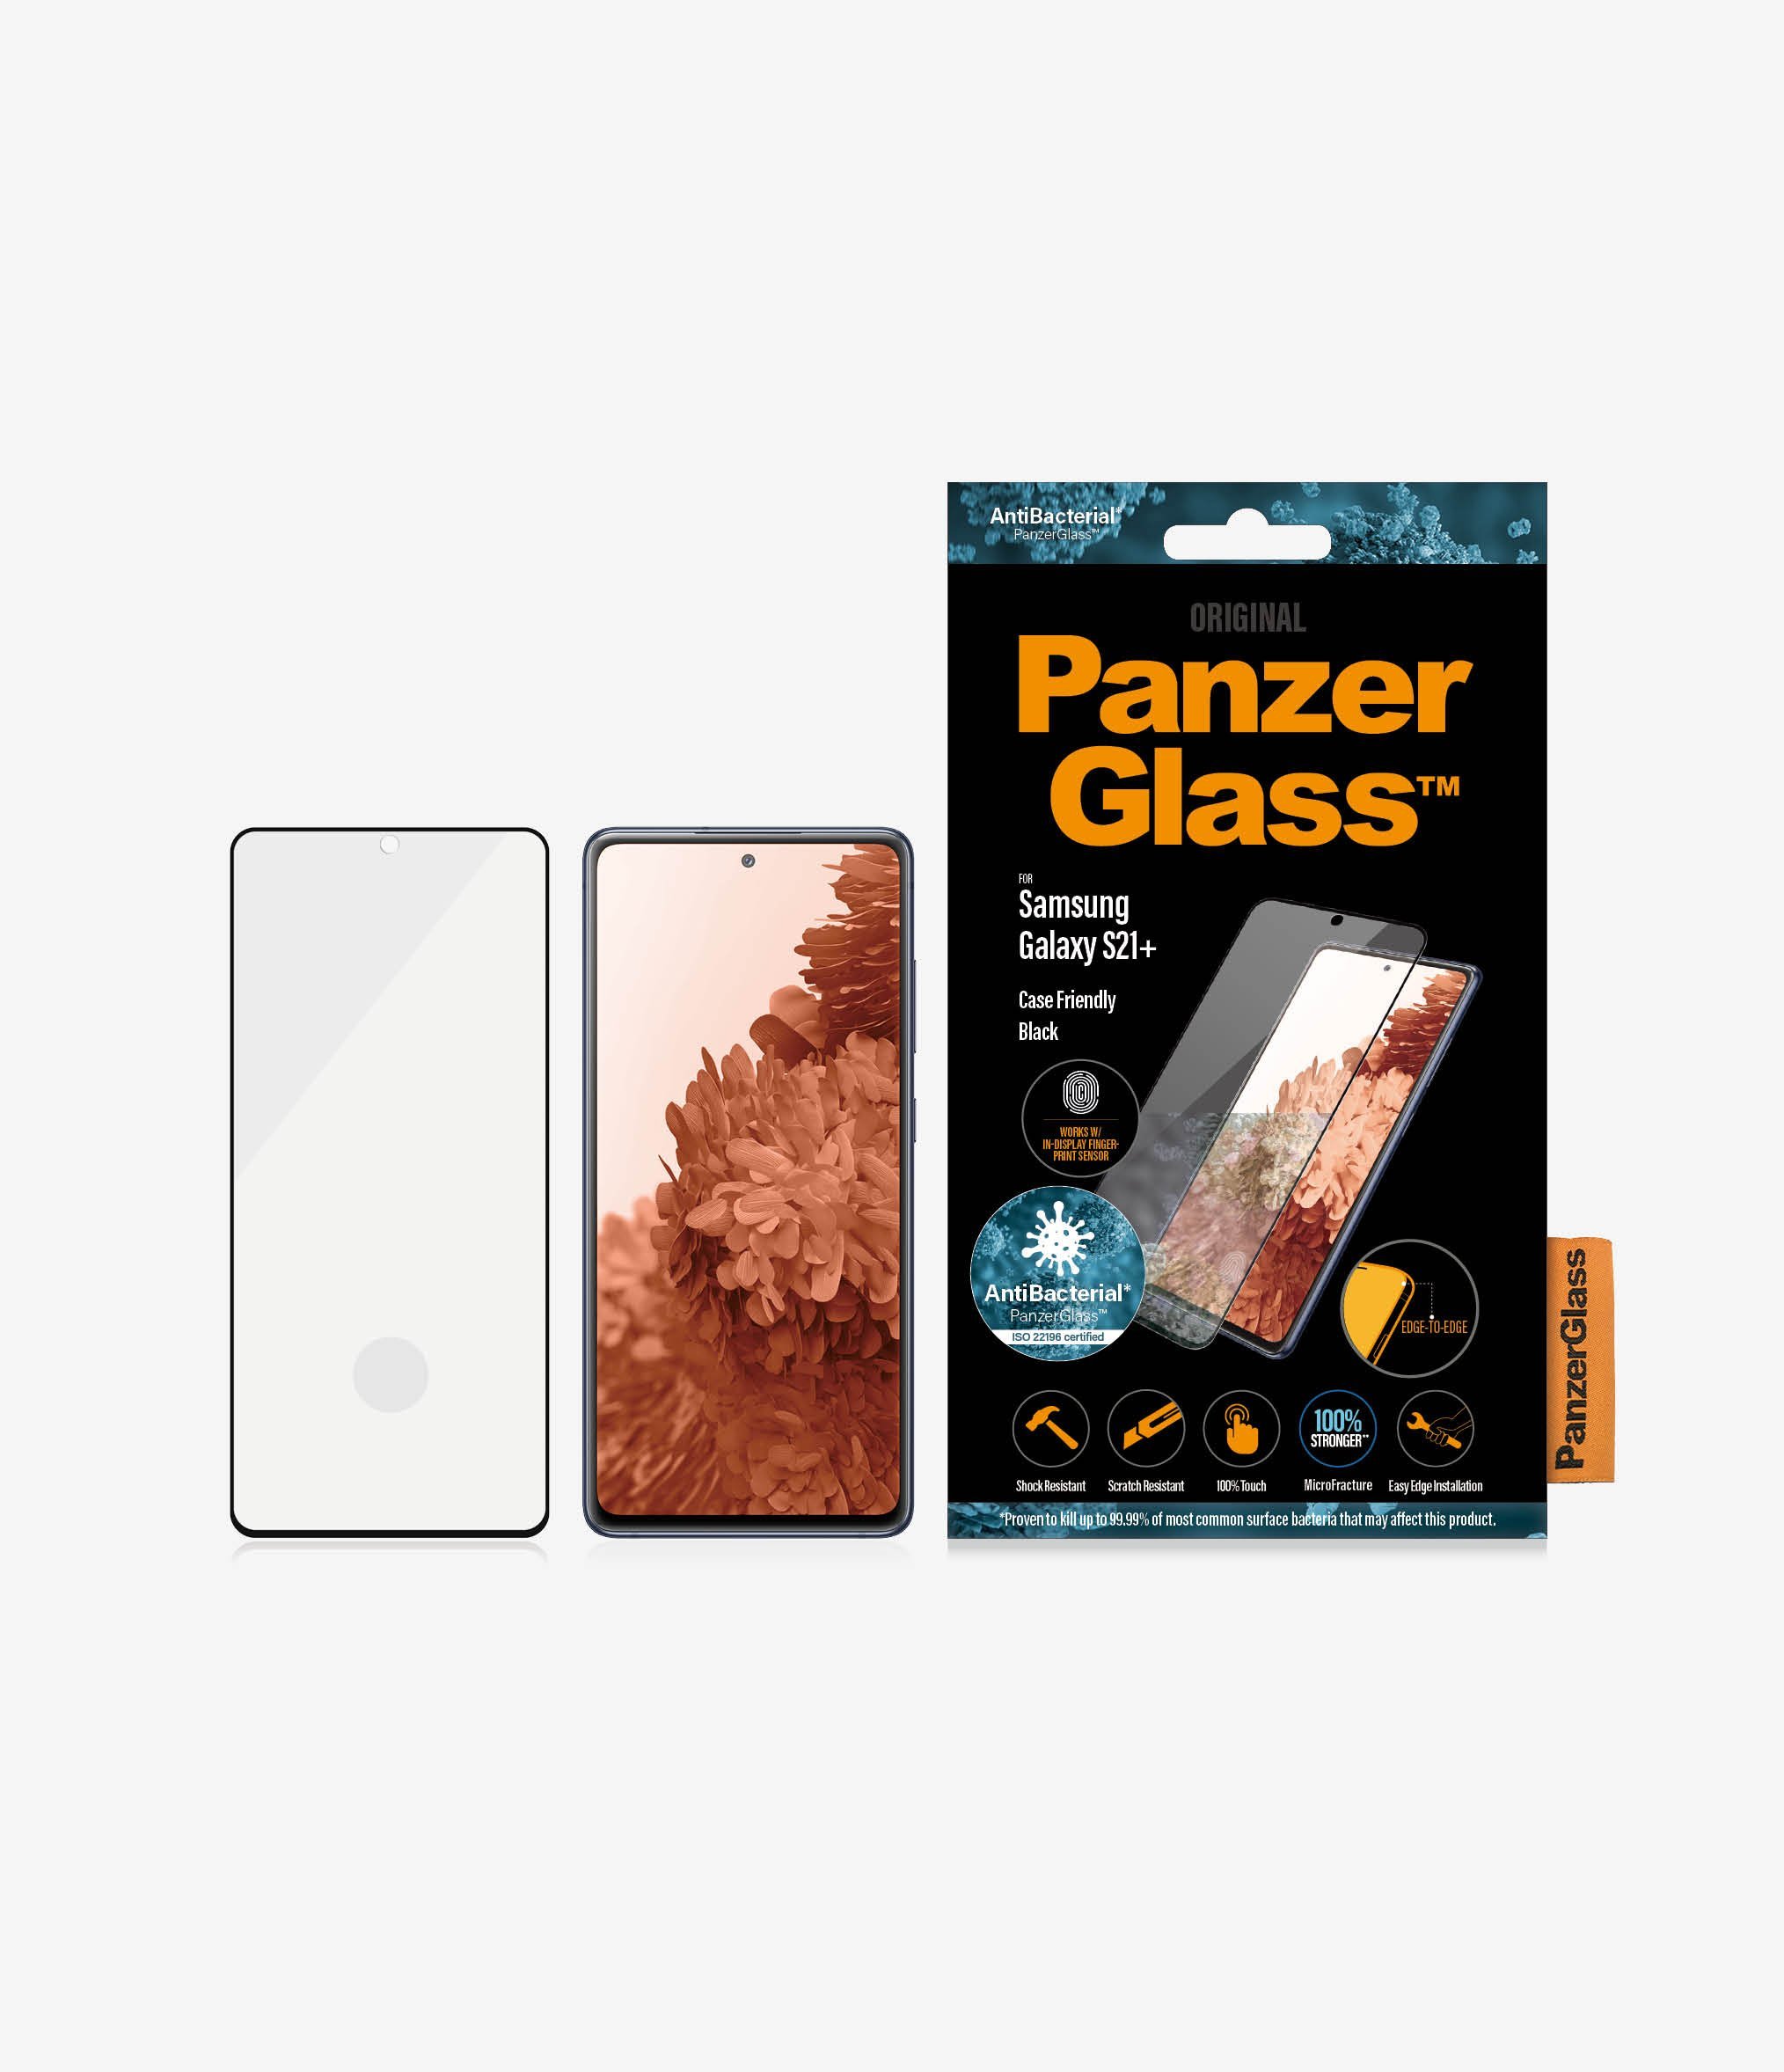 Szkło hartowane PanzerGlass E2E Microfracture do Samsung S21+ G996 Case Friendly Finger Print AntiBacterial czarny/black widok od przodu na szkło telefon i opakowanie